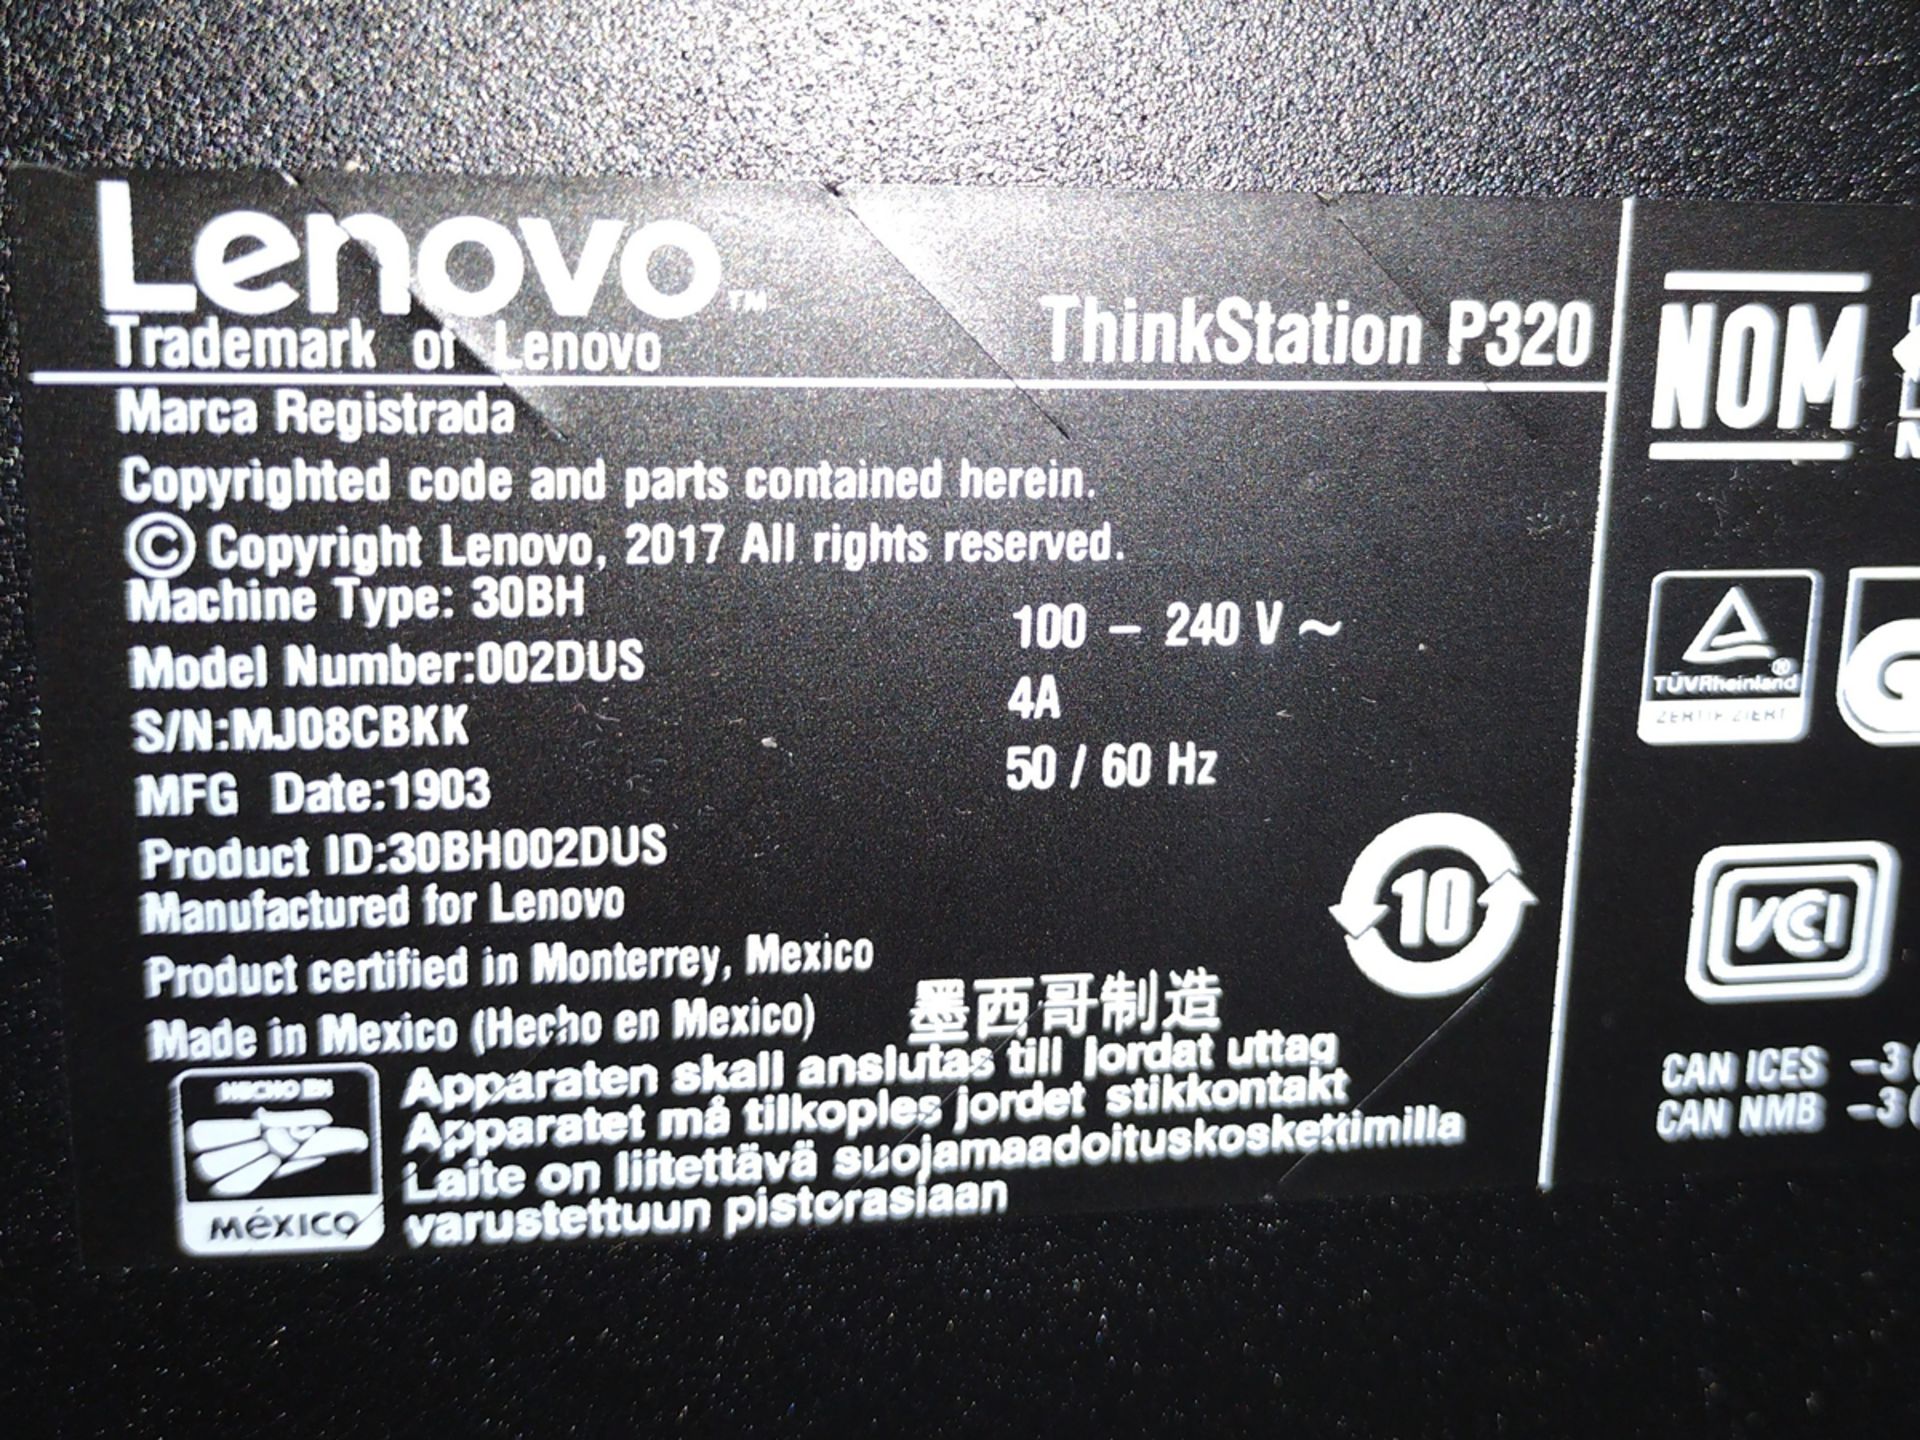 Lenovo P320 ThinkStation i7 PC w/ Monitor and Keyboard - Image 2 of 2